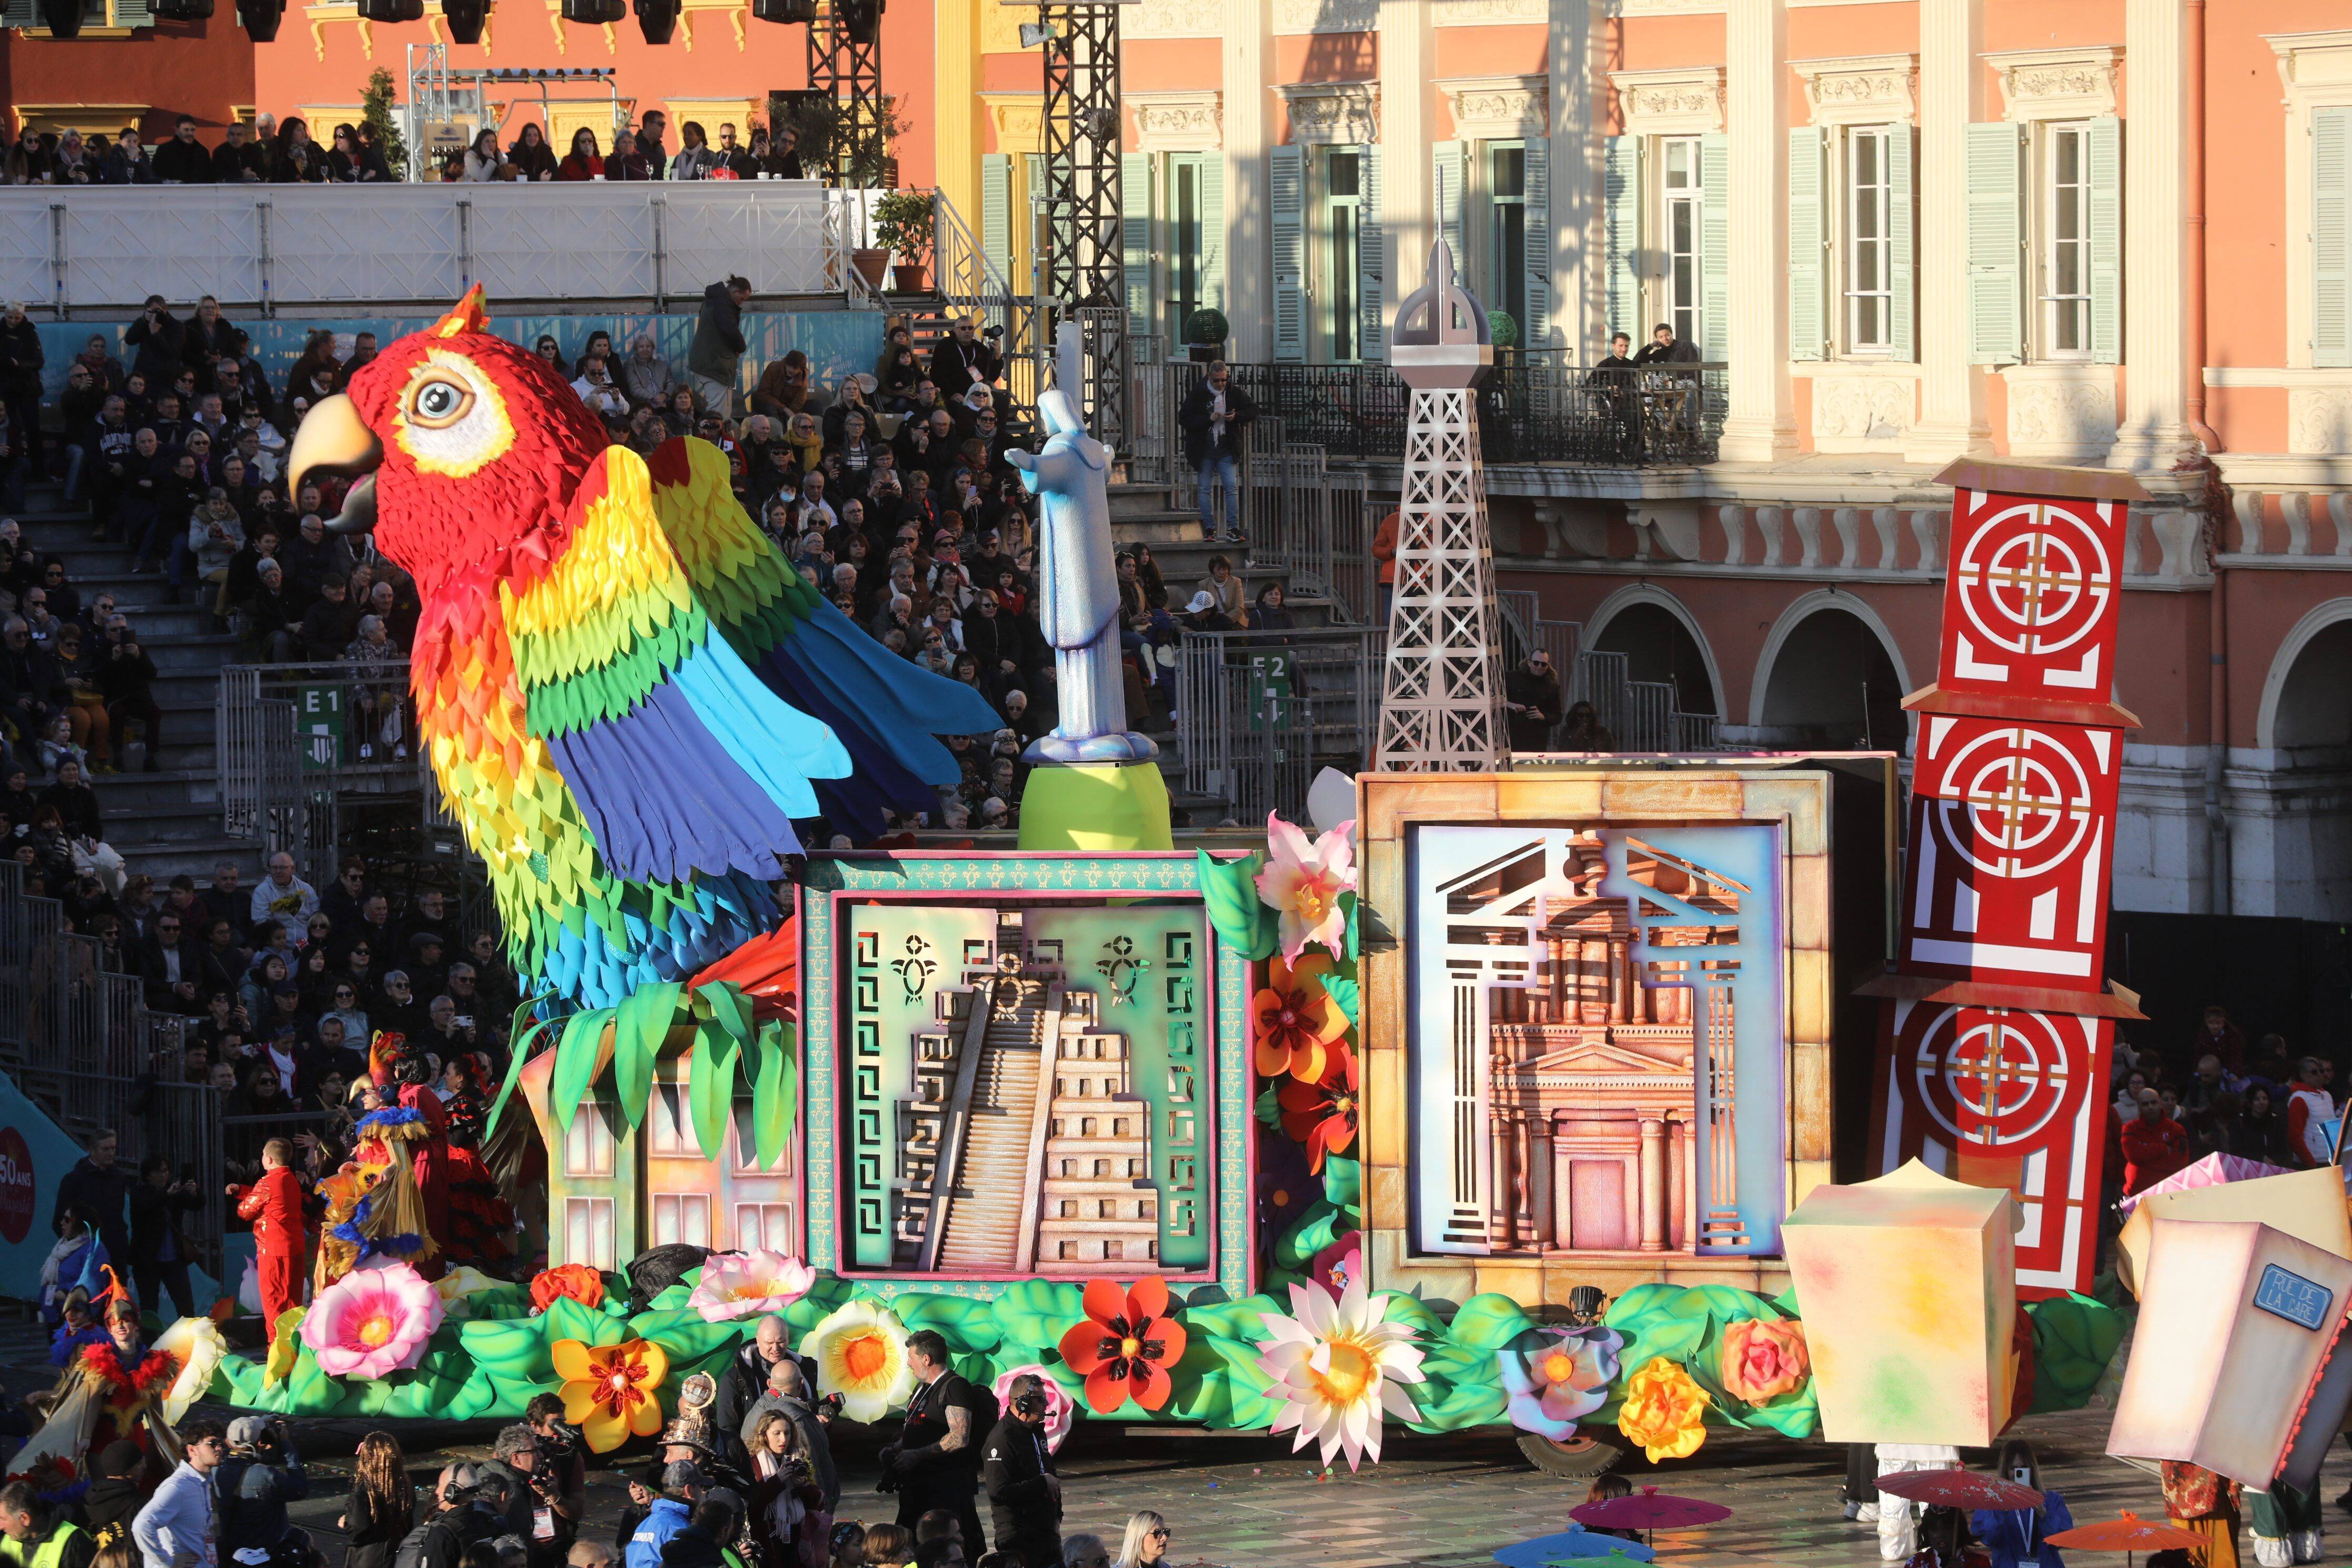 Pourquoi les bombes de serpentins sont interdites cette année au Carnaval  de Nice - Monaco-Matin